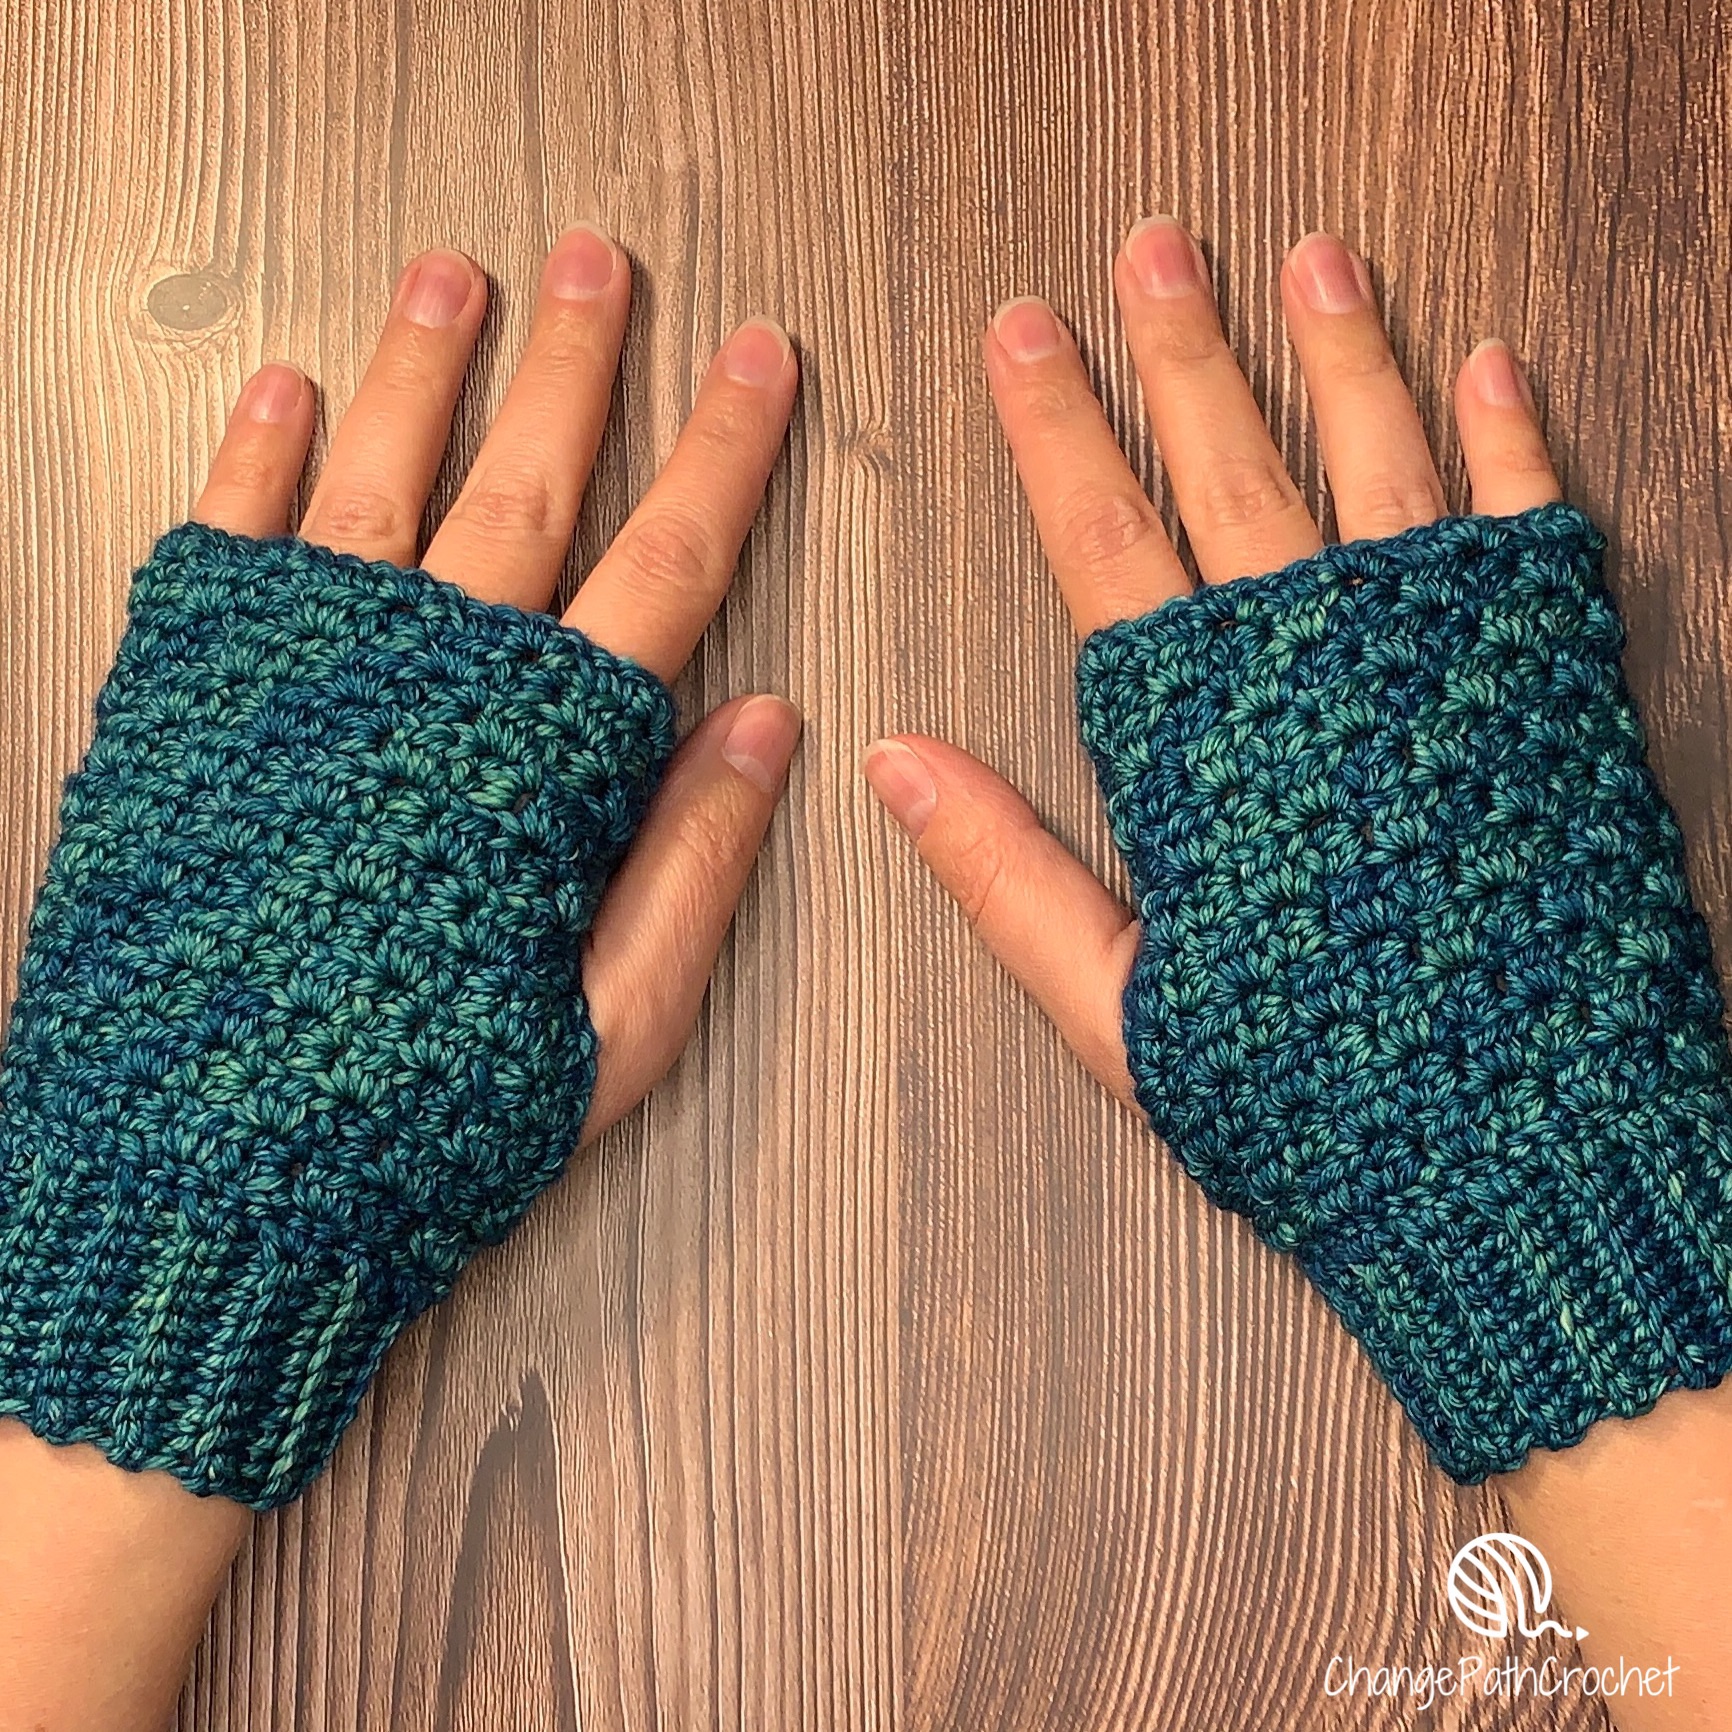 Hands with crochet fingerless gloves